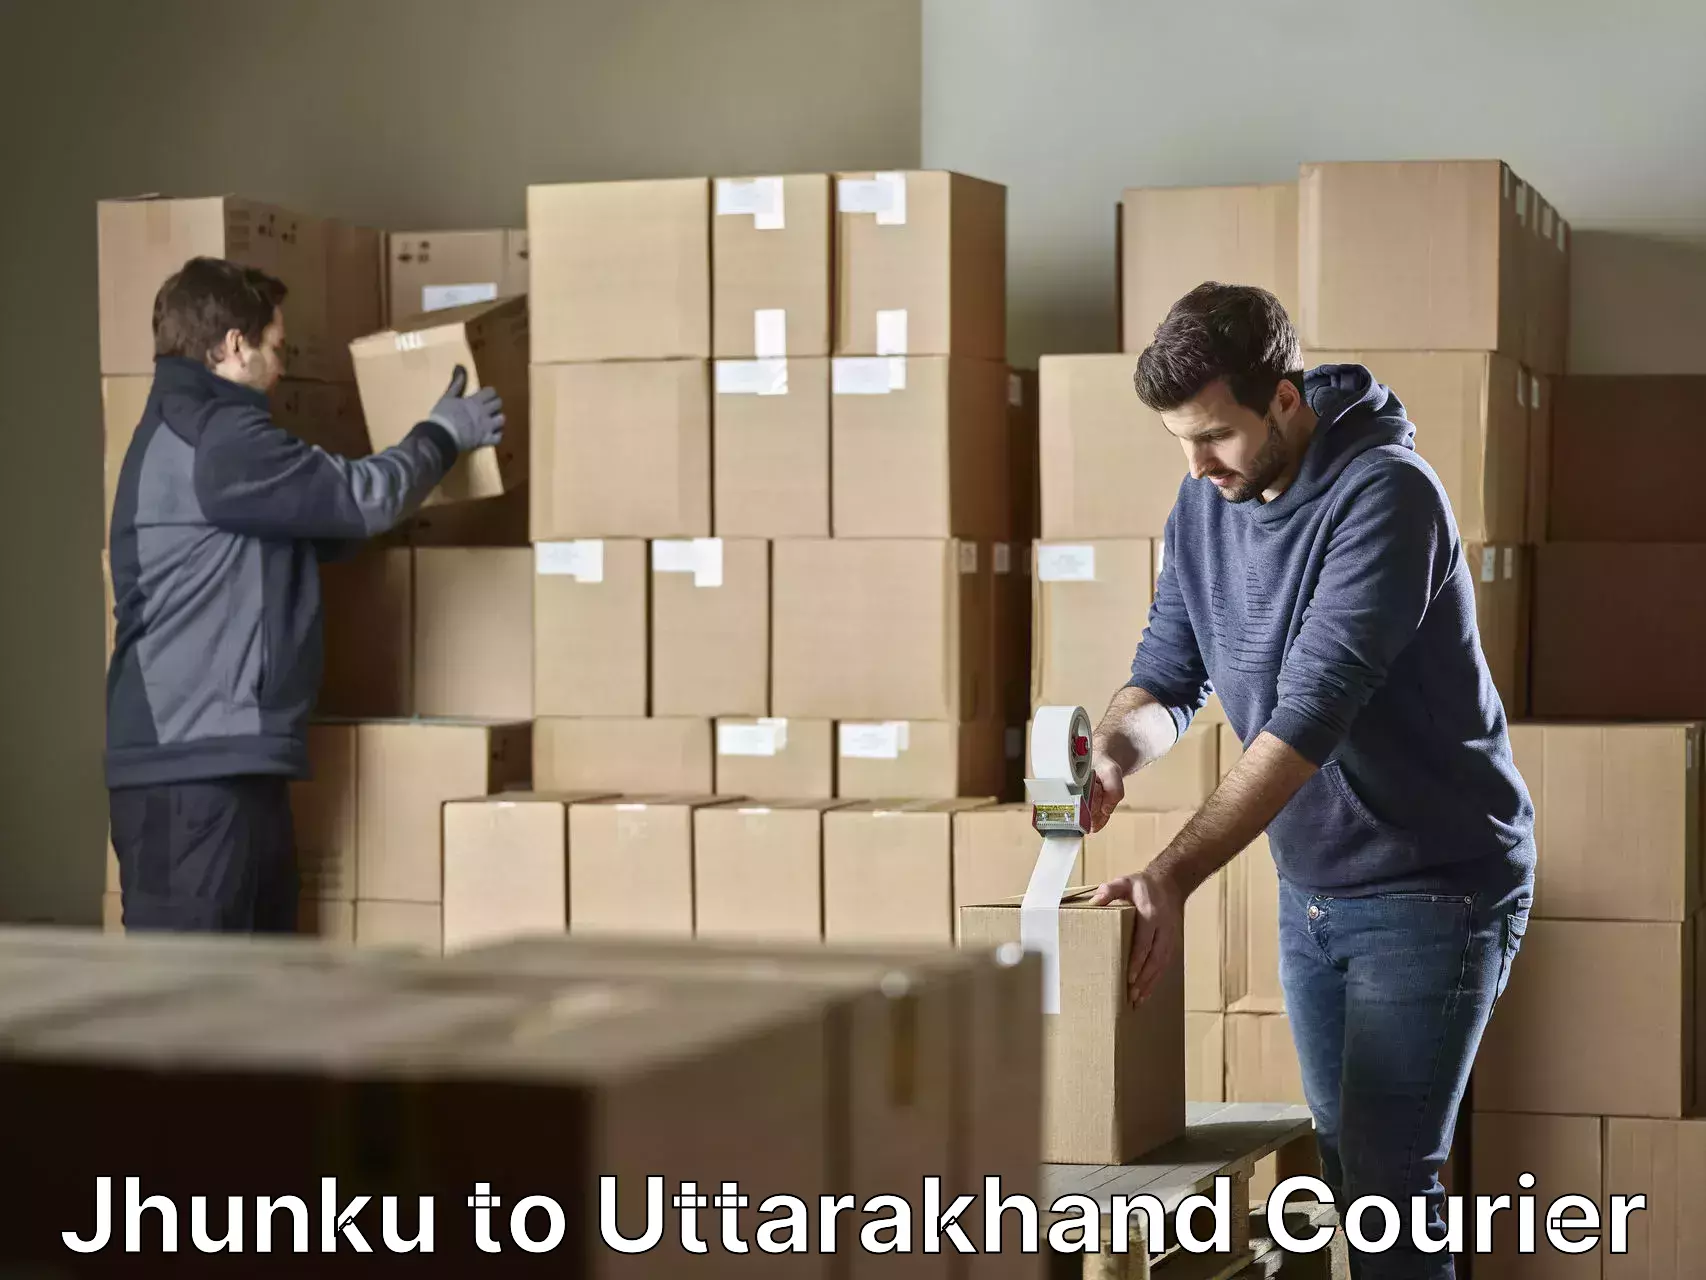 Household moving experts Jhunku to Uttarakhand